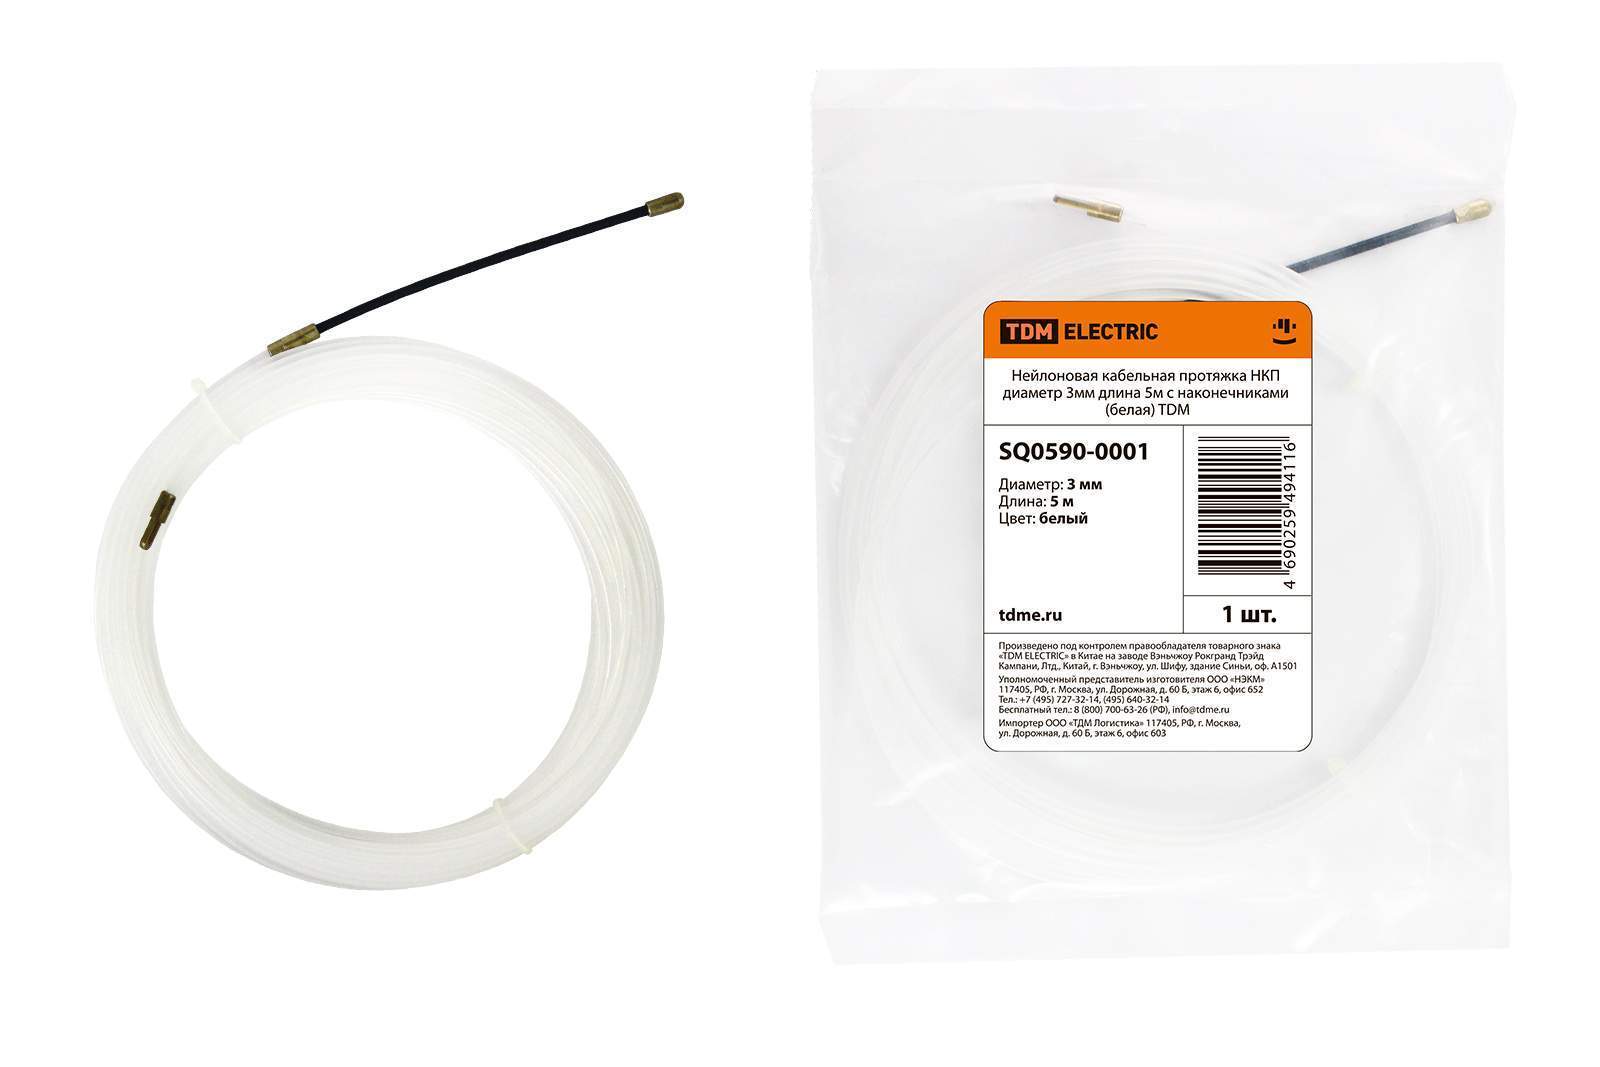 нейлоновая кабельная протяжка нкп диаметр 3мм длина 5м с наконечниками (белая) tdm от BTSprom.by